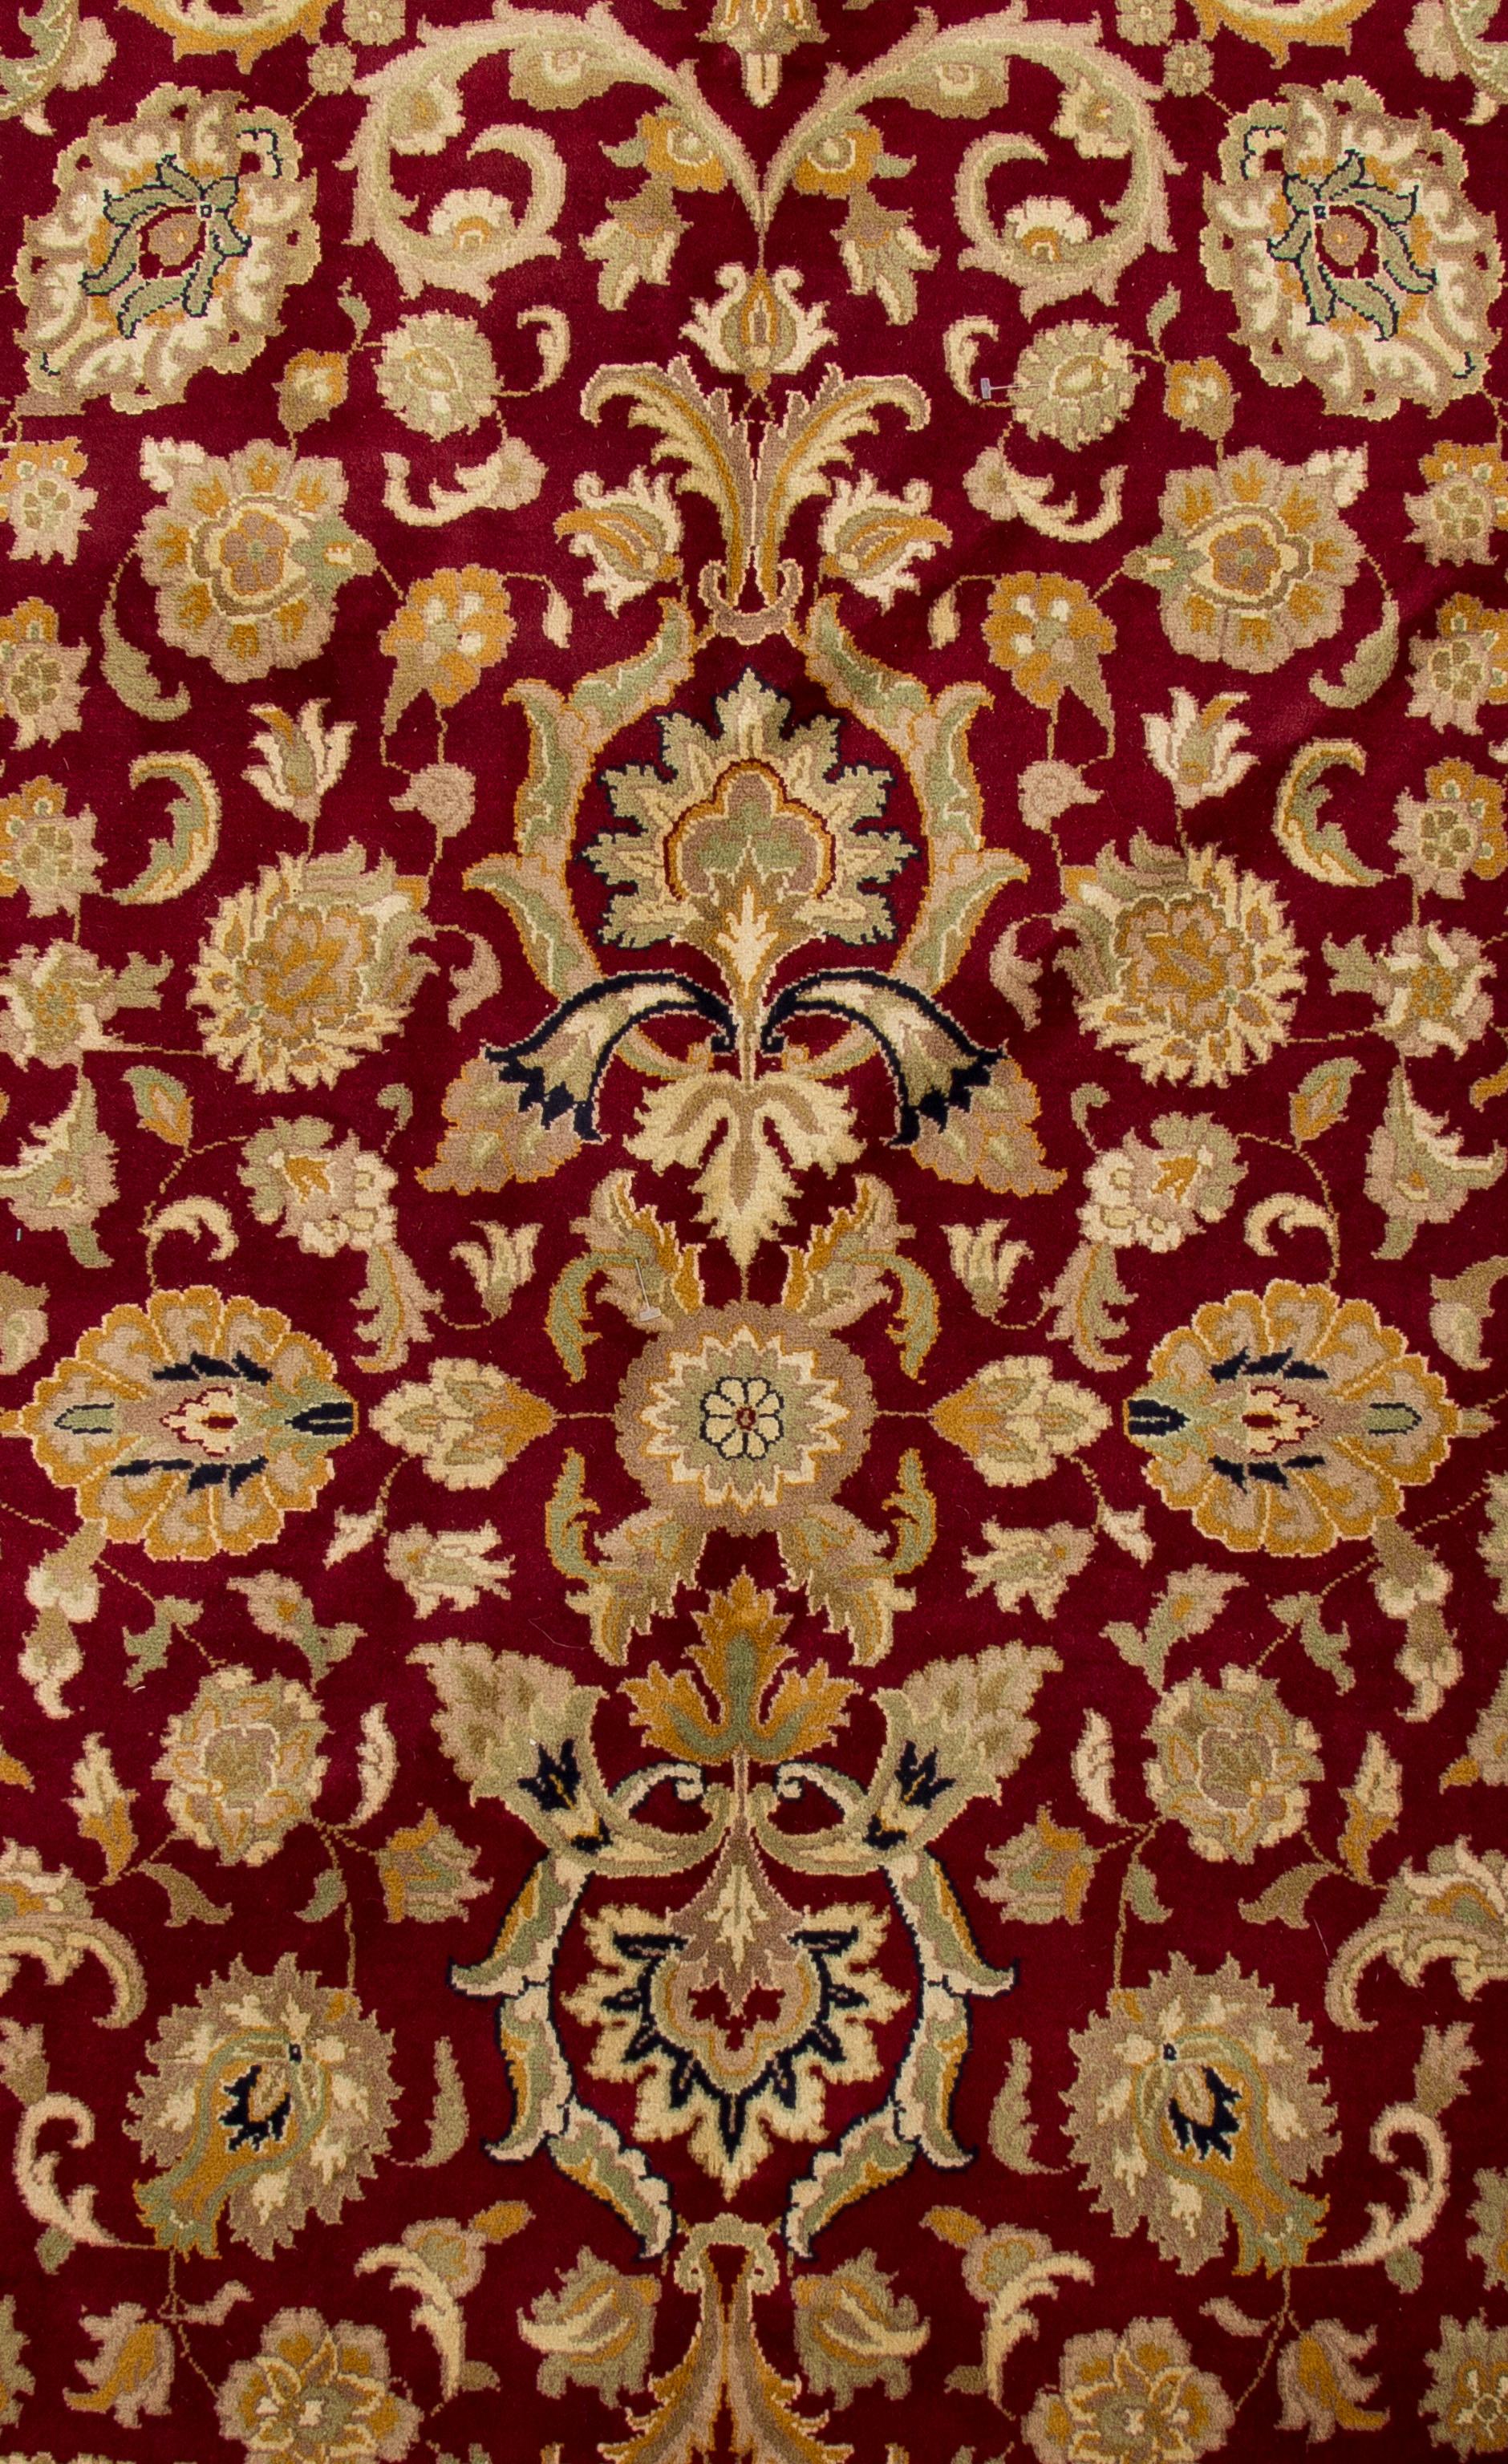 Ce tapis présente un dessin sur toute sa surface, basé sur un motif répété. Cela lui donne un sentiment d'équilibre et d'élégance avec sa couleur riche et vibrante, ajoutant une touche formelle et sophistiquée à tout design de pièce traditionnel.